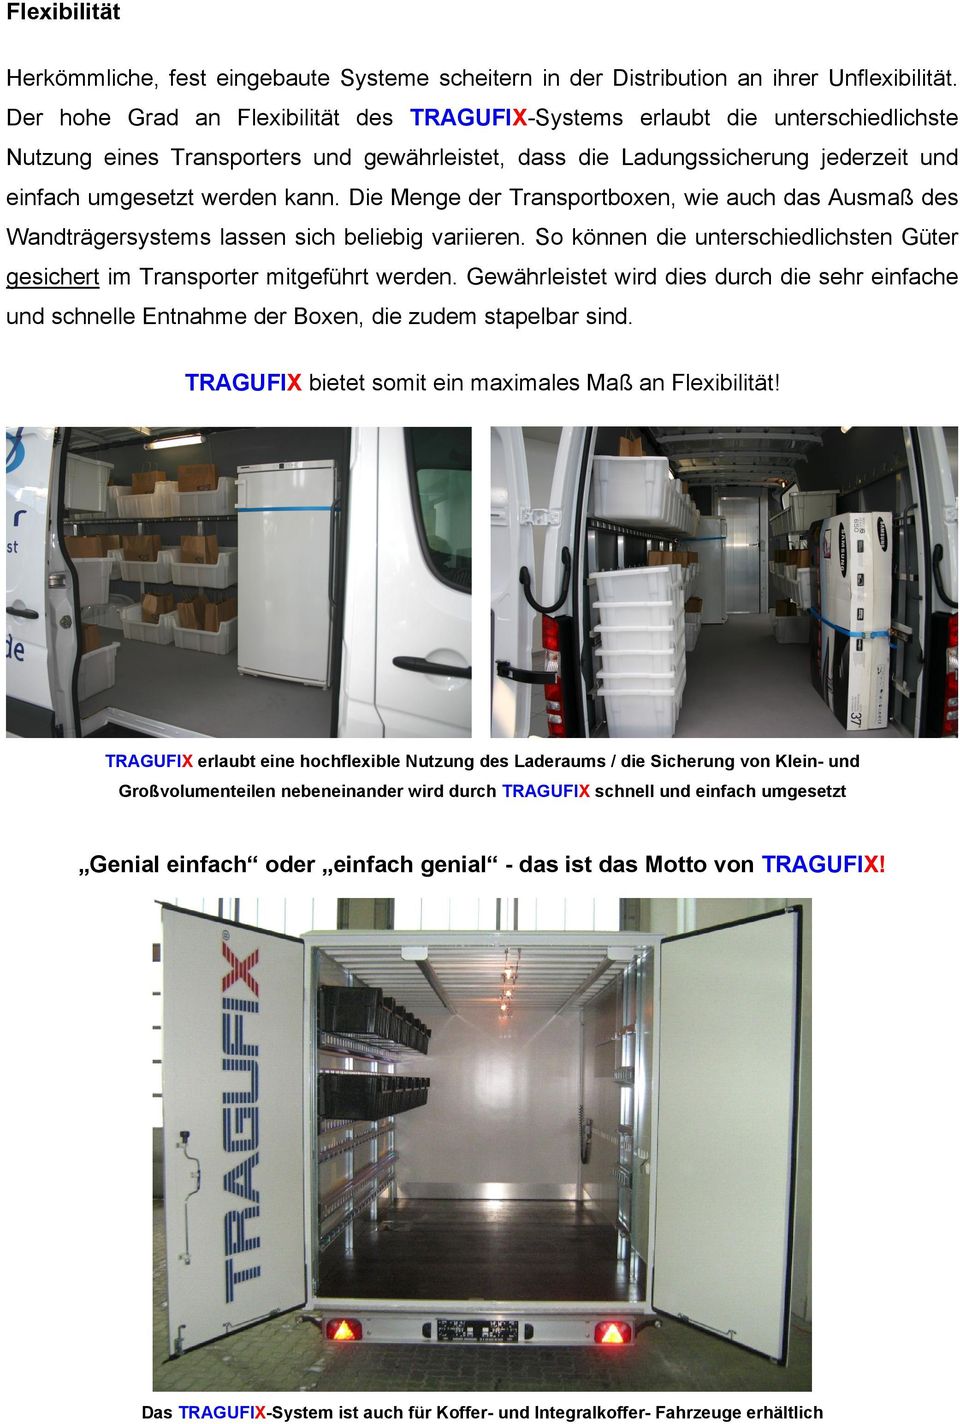 Die Menge der Transportboxen, wie auch das Ausmaß des Wandträgersystems lassen sich beliebig variieren. So können die unterschiedlichsten Güter gesichert im Transporter mitgeführt werden.